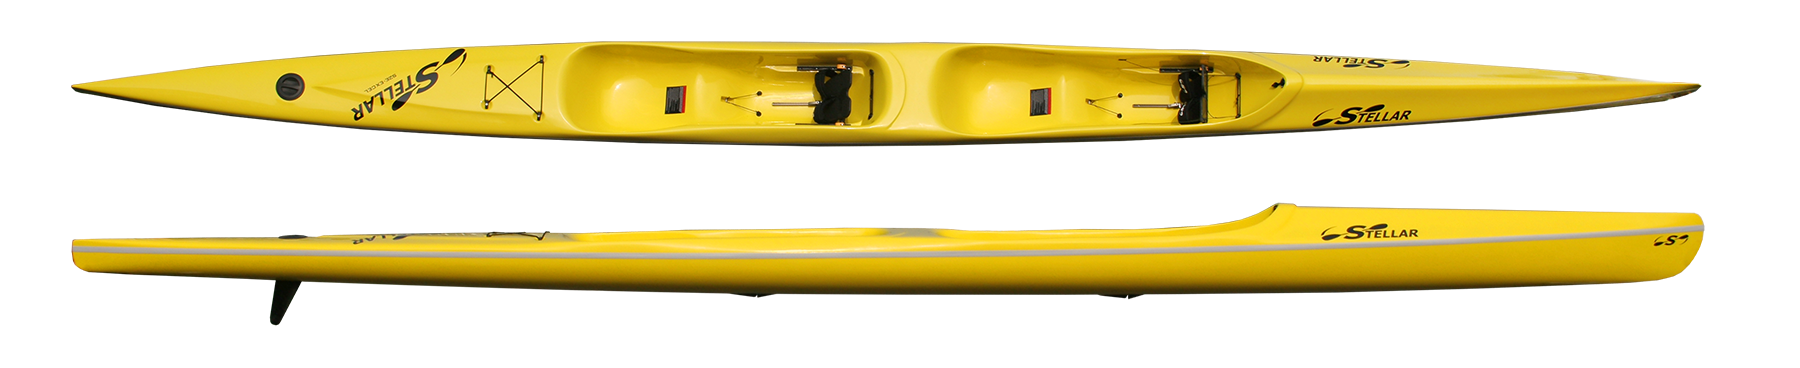 Kayaks: S2E by Stellar Kayaks - Image 4710